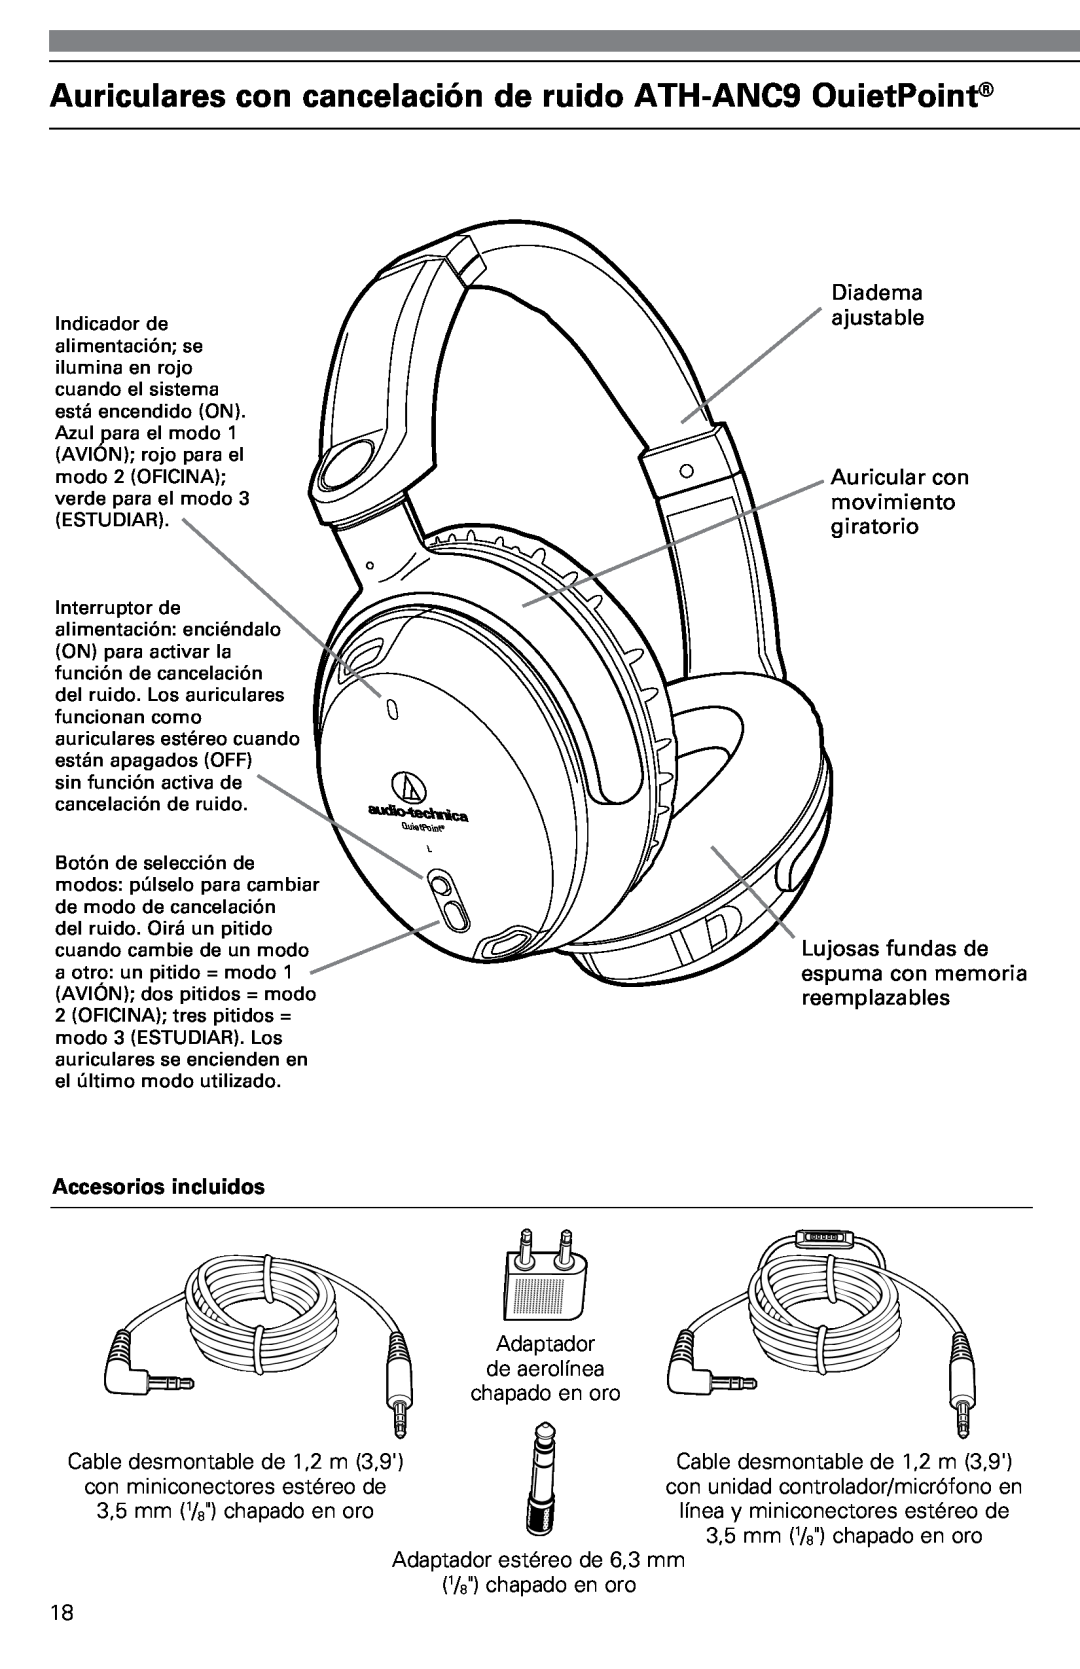 Audio-Technica ATH-ANC9 instruction manual Accesorios incluidos, Diadema ajustable, Auricular con movimiento giratorio 